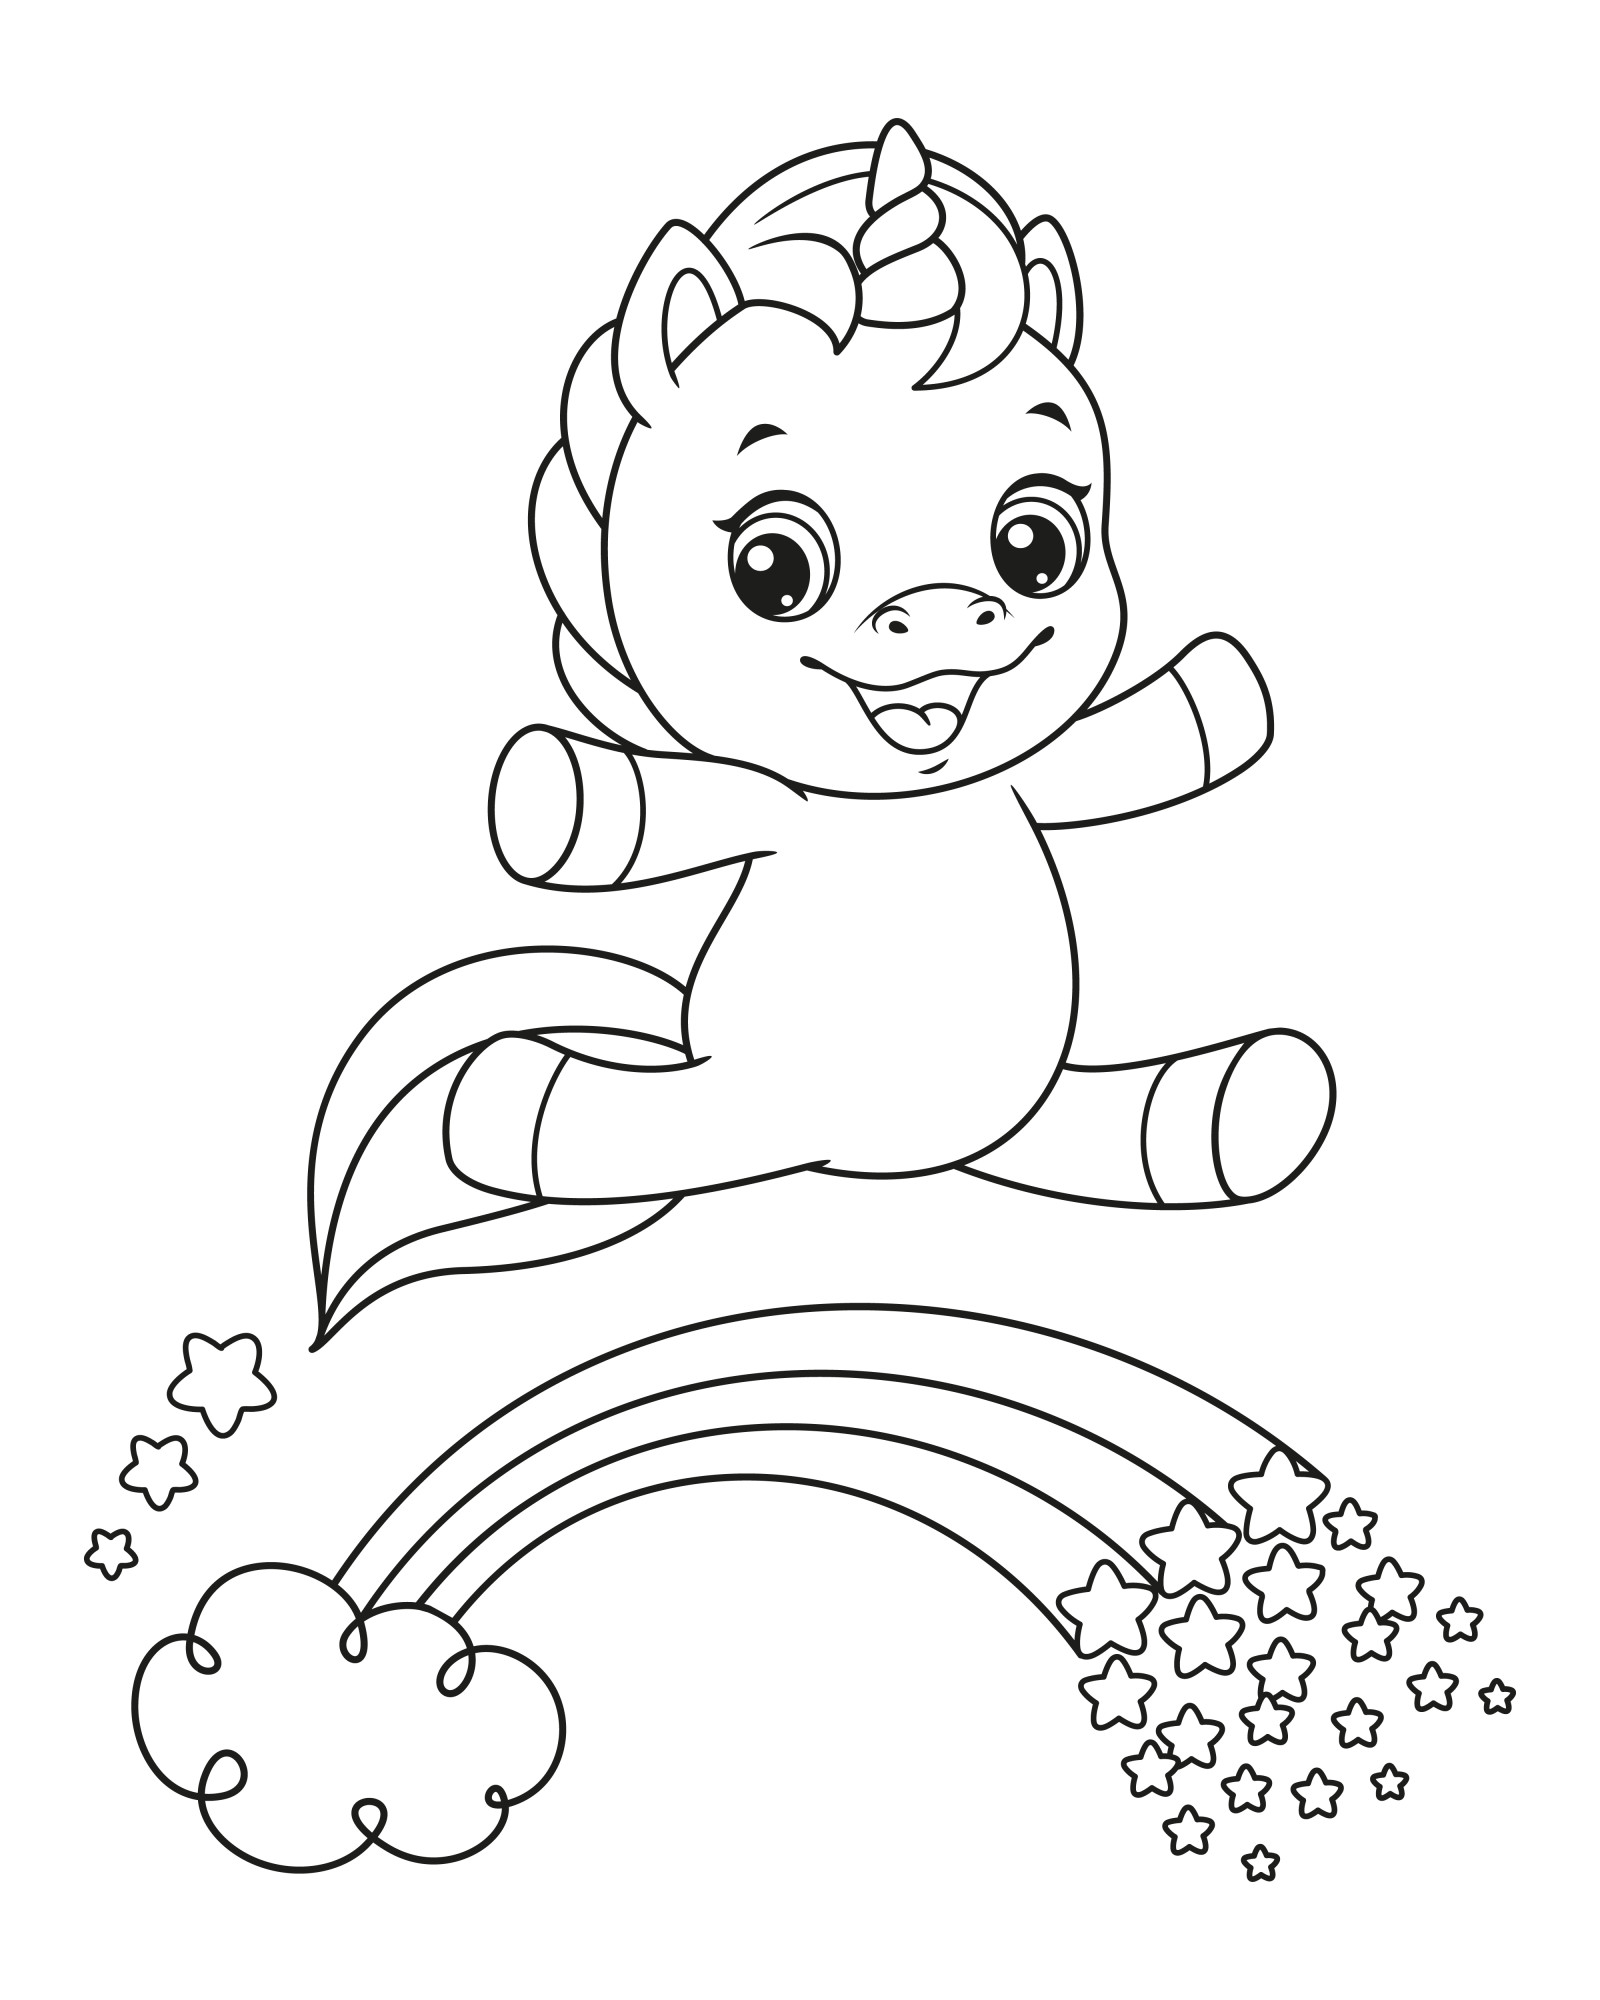 Раскраска для детей: маленький единорог прыгает на радуге